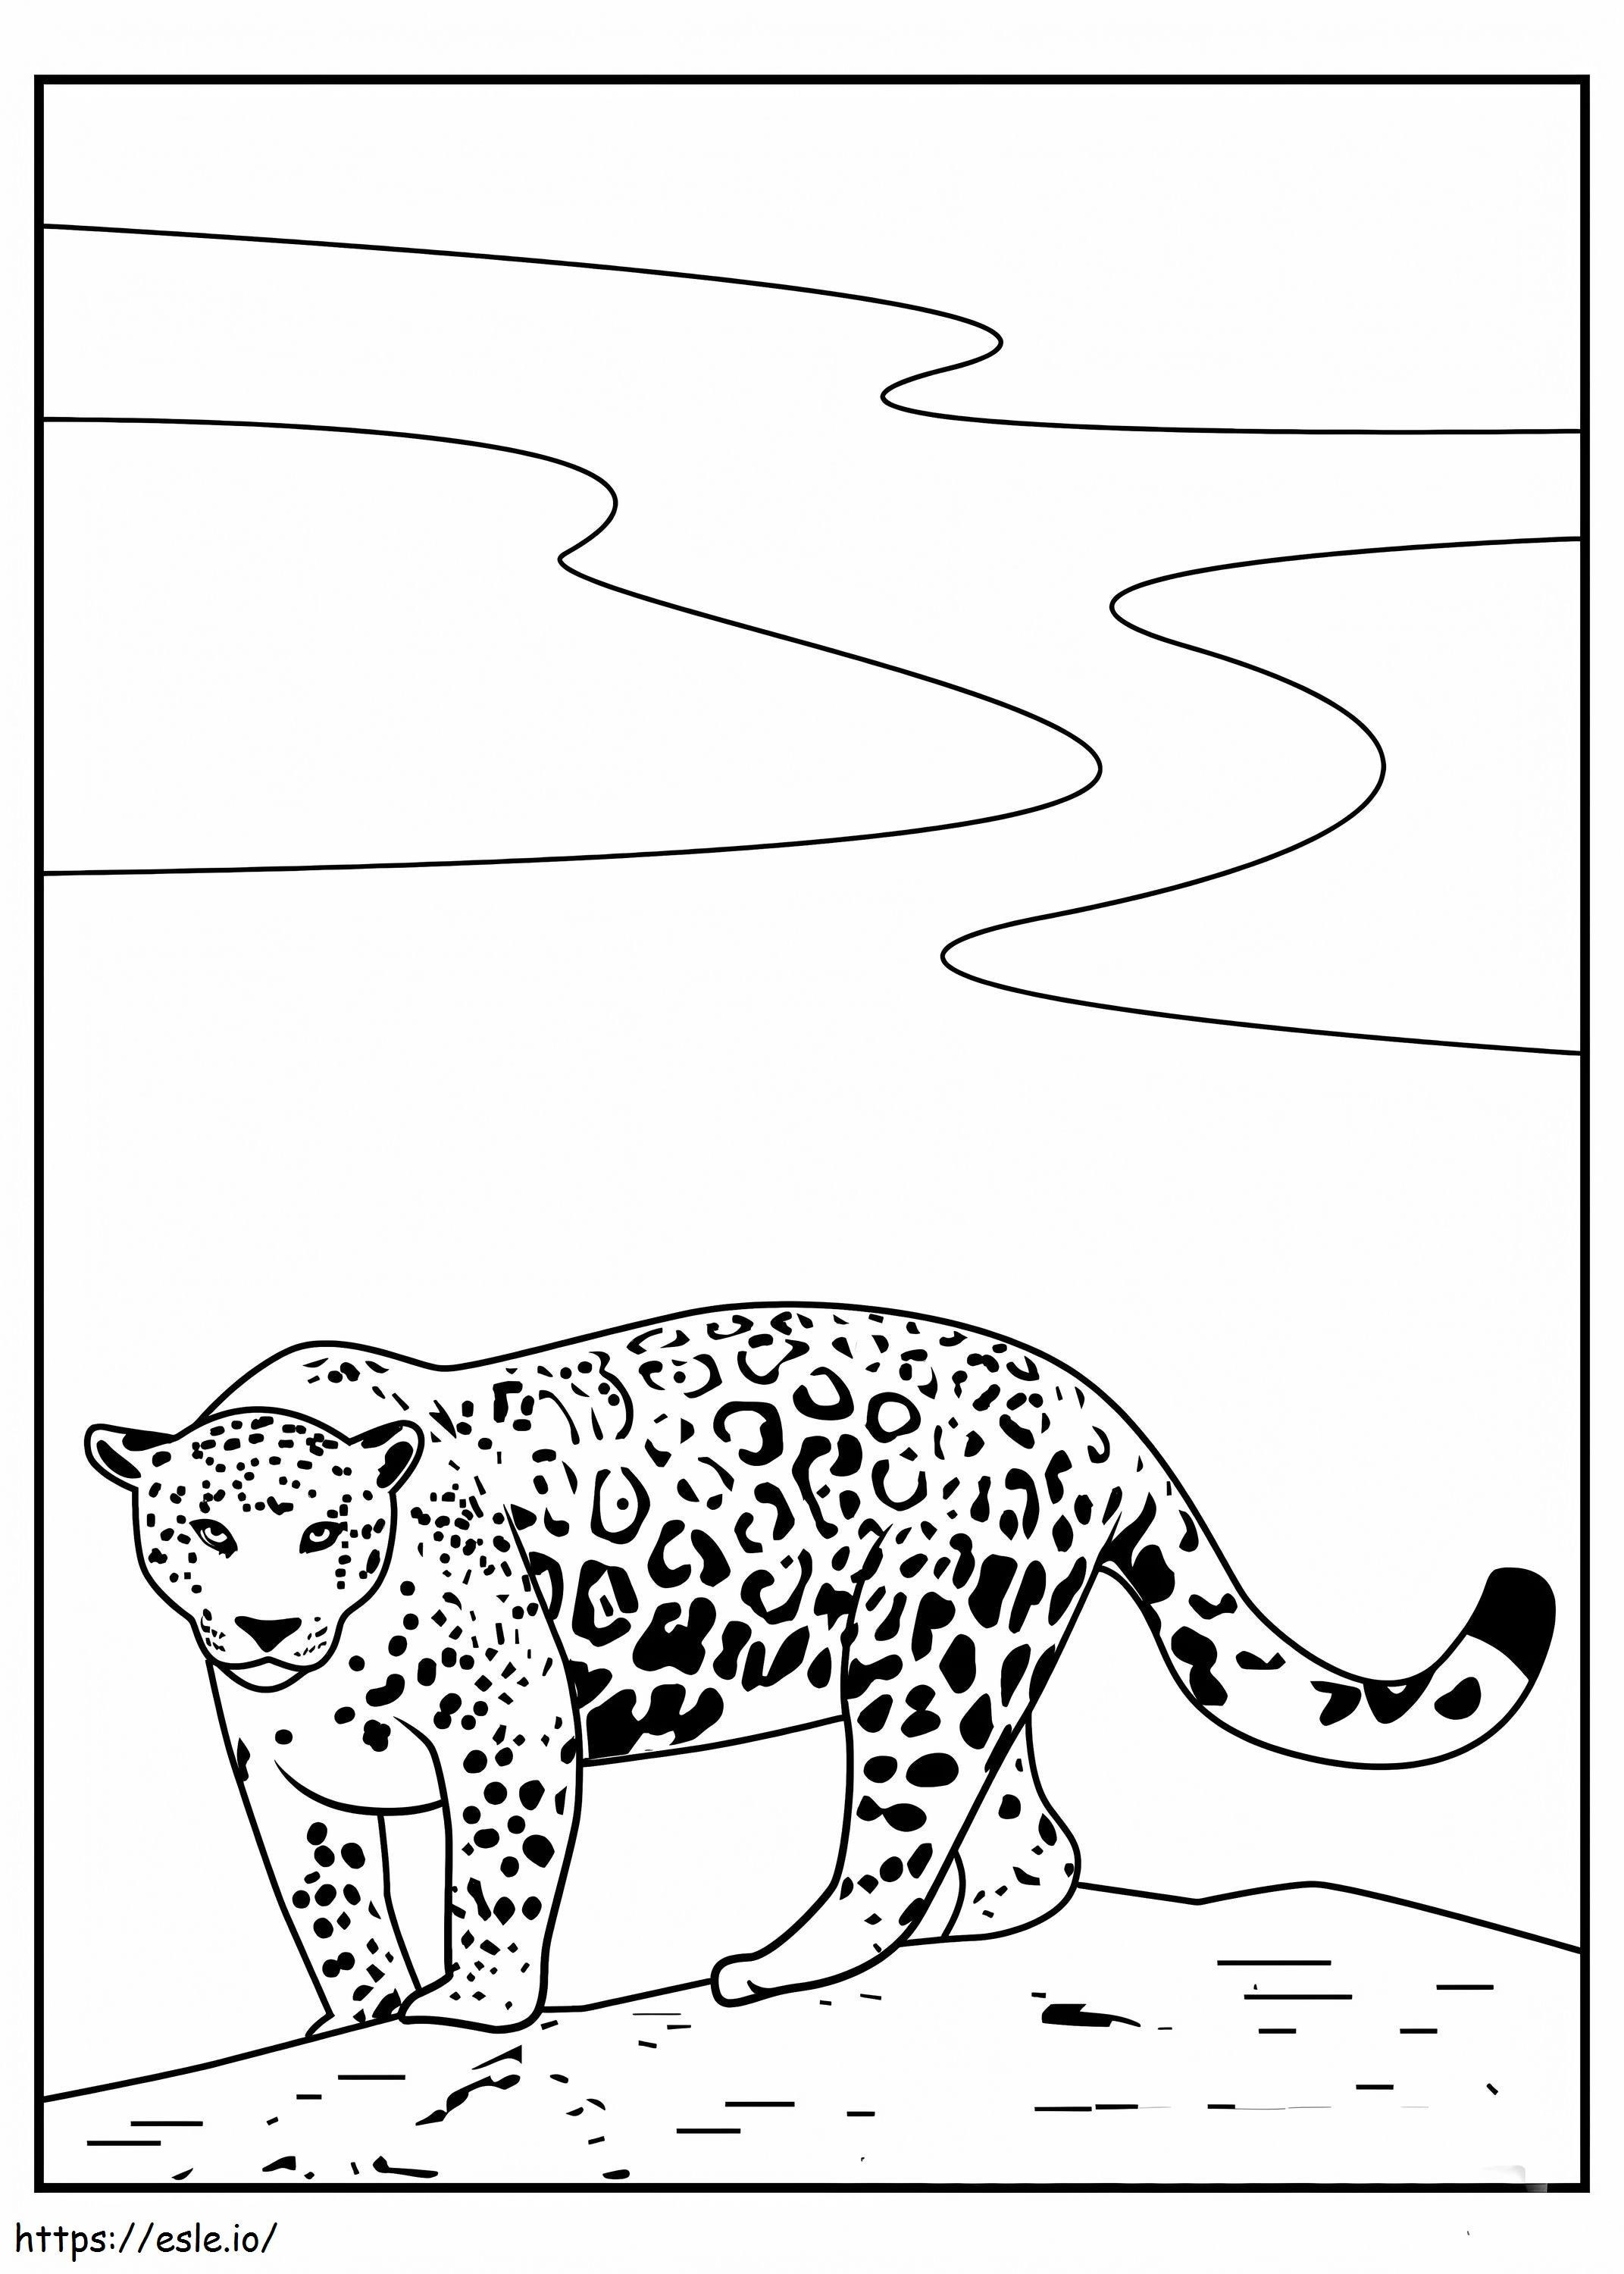 jaguar simples para colorir